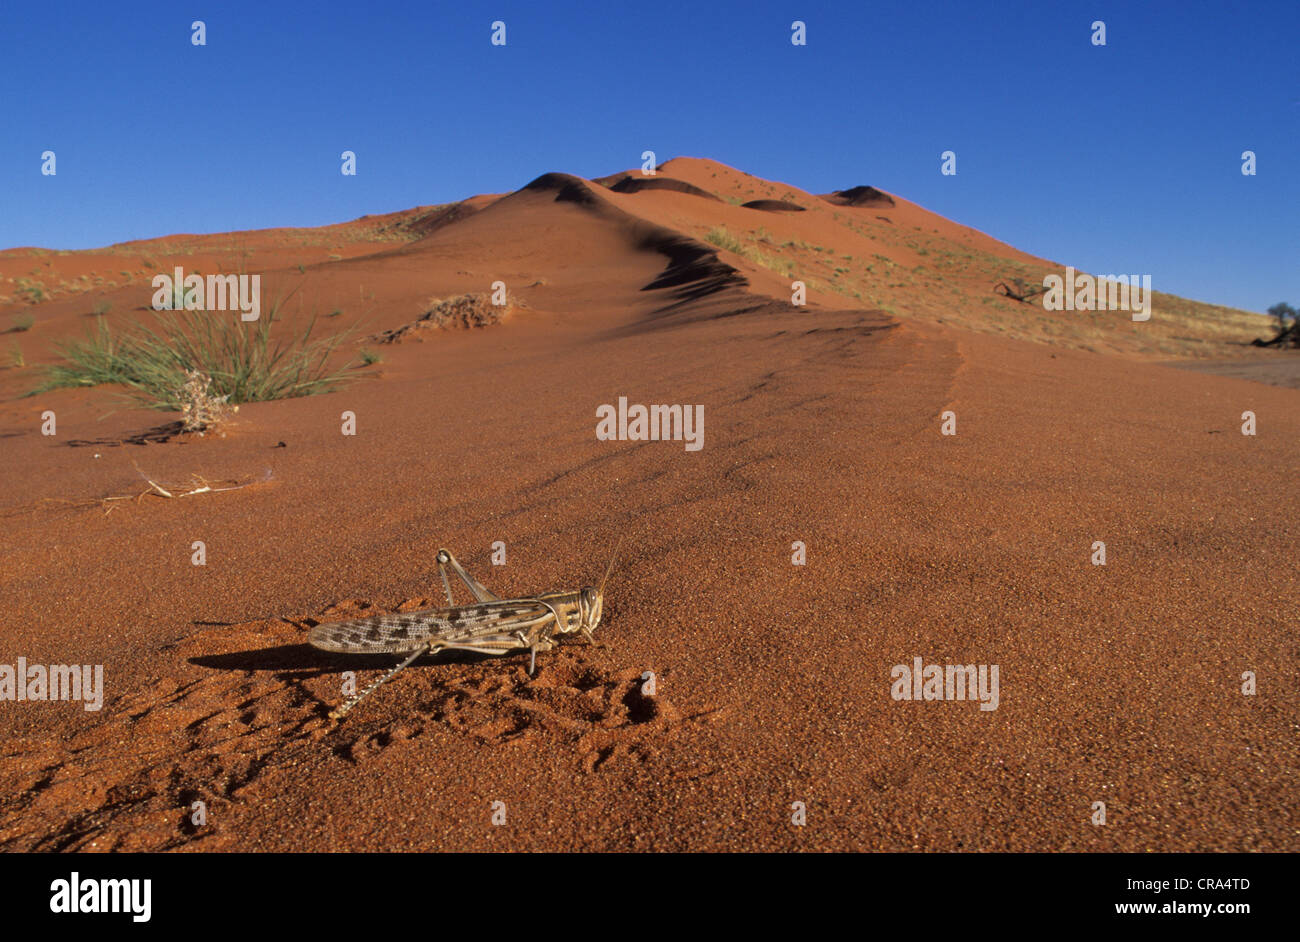 Sand dune with grasshopper, Namib-Naukluft Park, Namibia, Africa Stock Photo